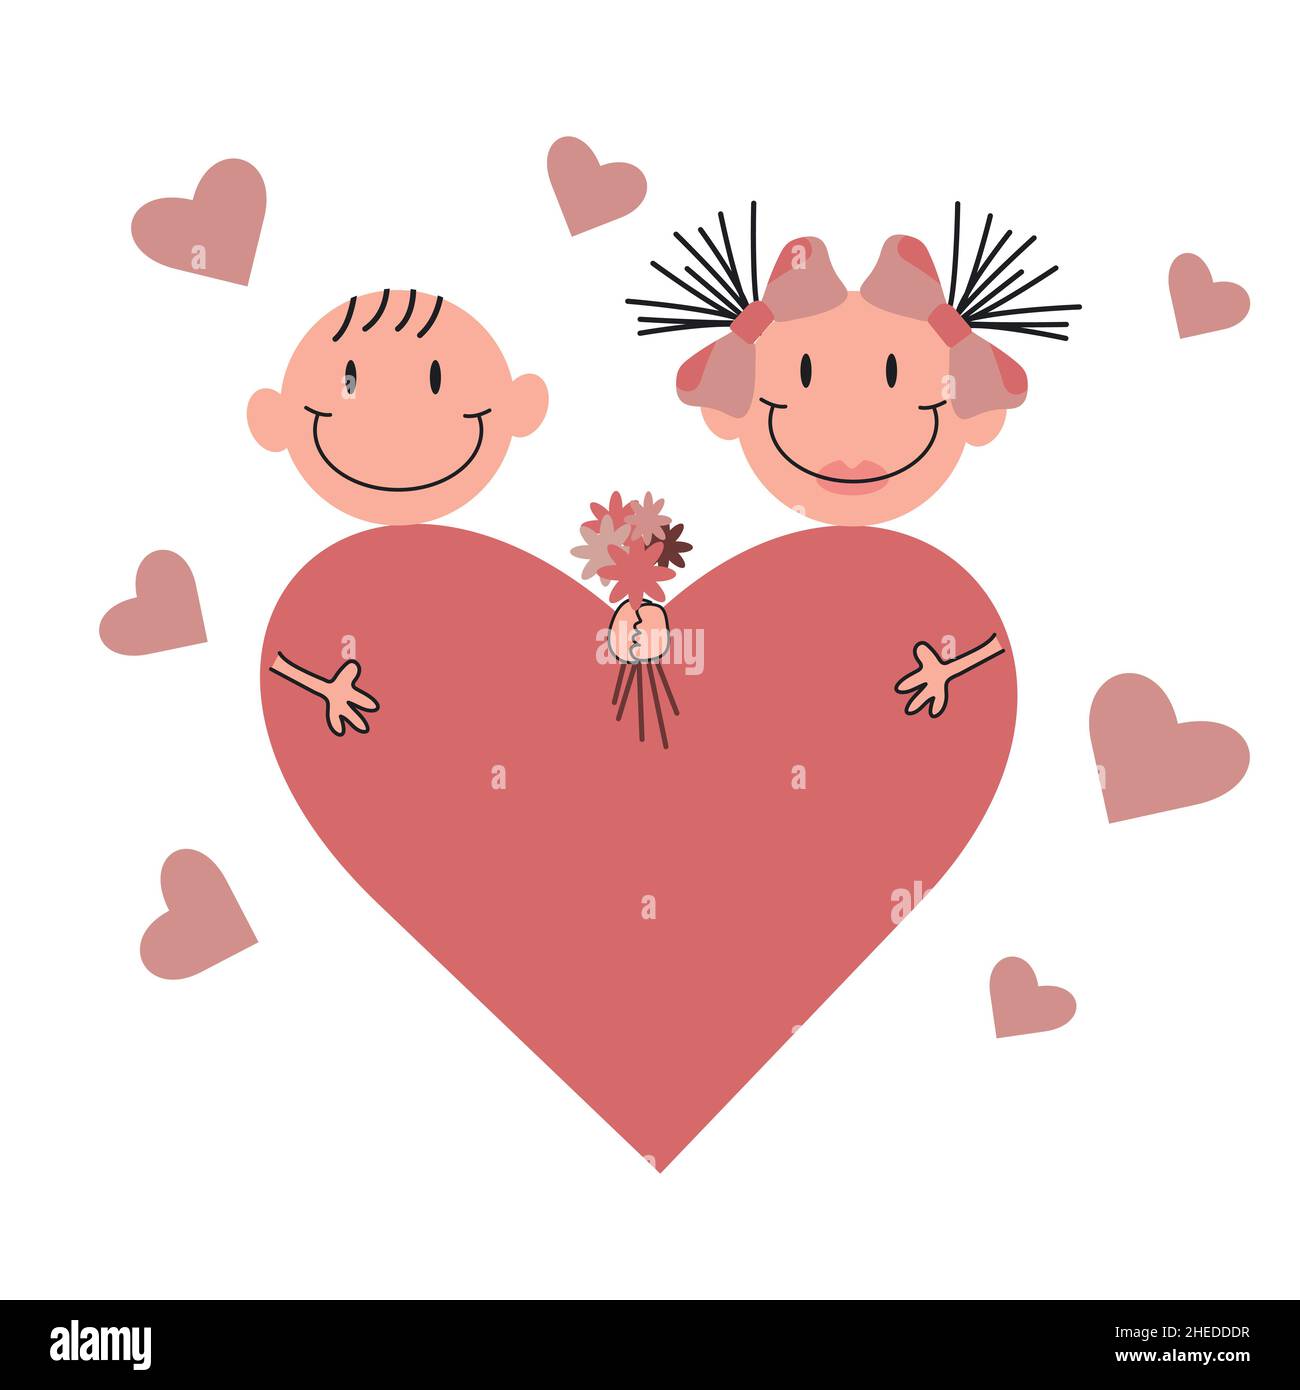 Una niña y un niño de dibujos animados se enamoran unos de otros. Ramo de flores y un corazón enorme, día de San Valentín concepto de diseño vectorial. Historia de amor de una pareja Ilustración del Vector